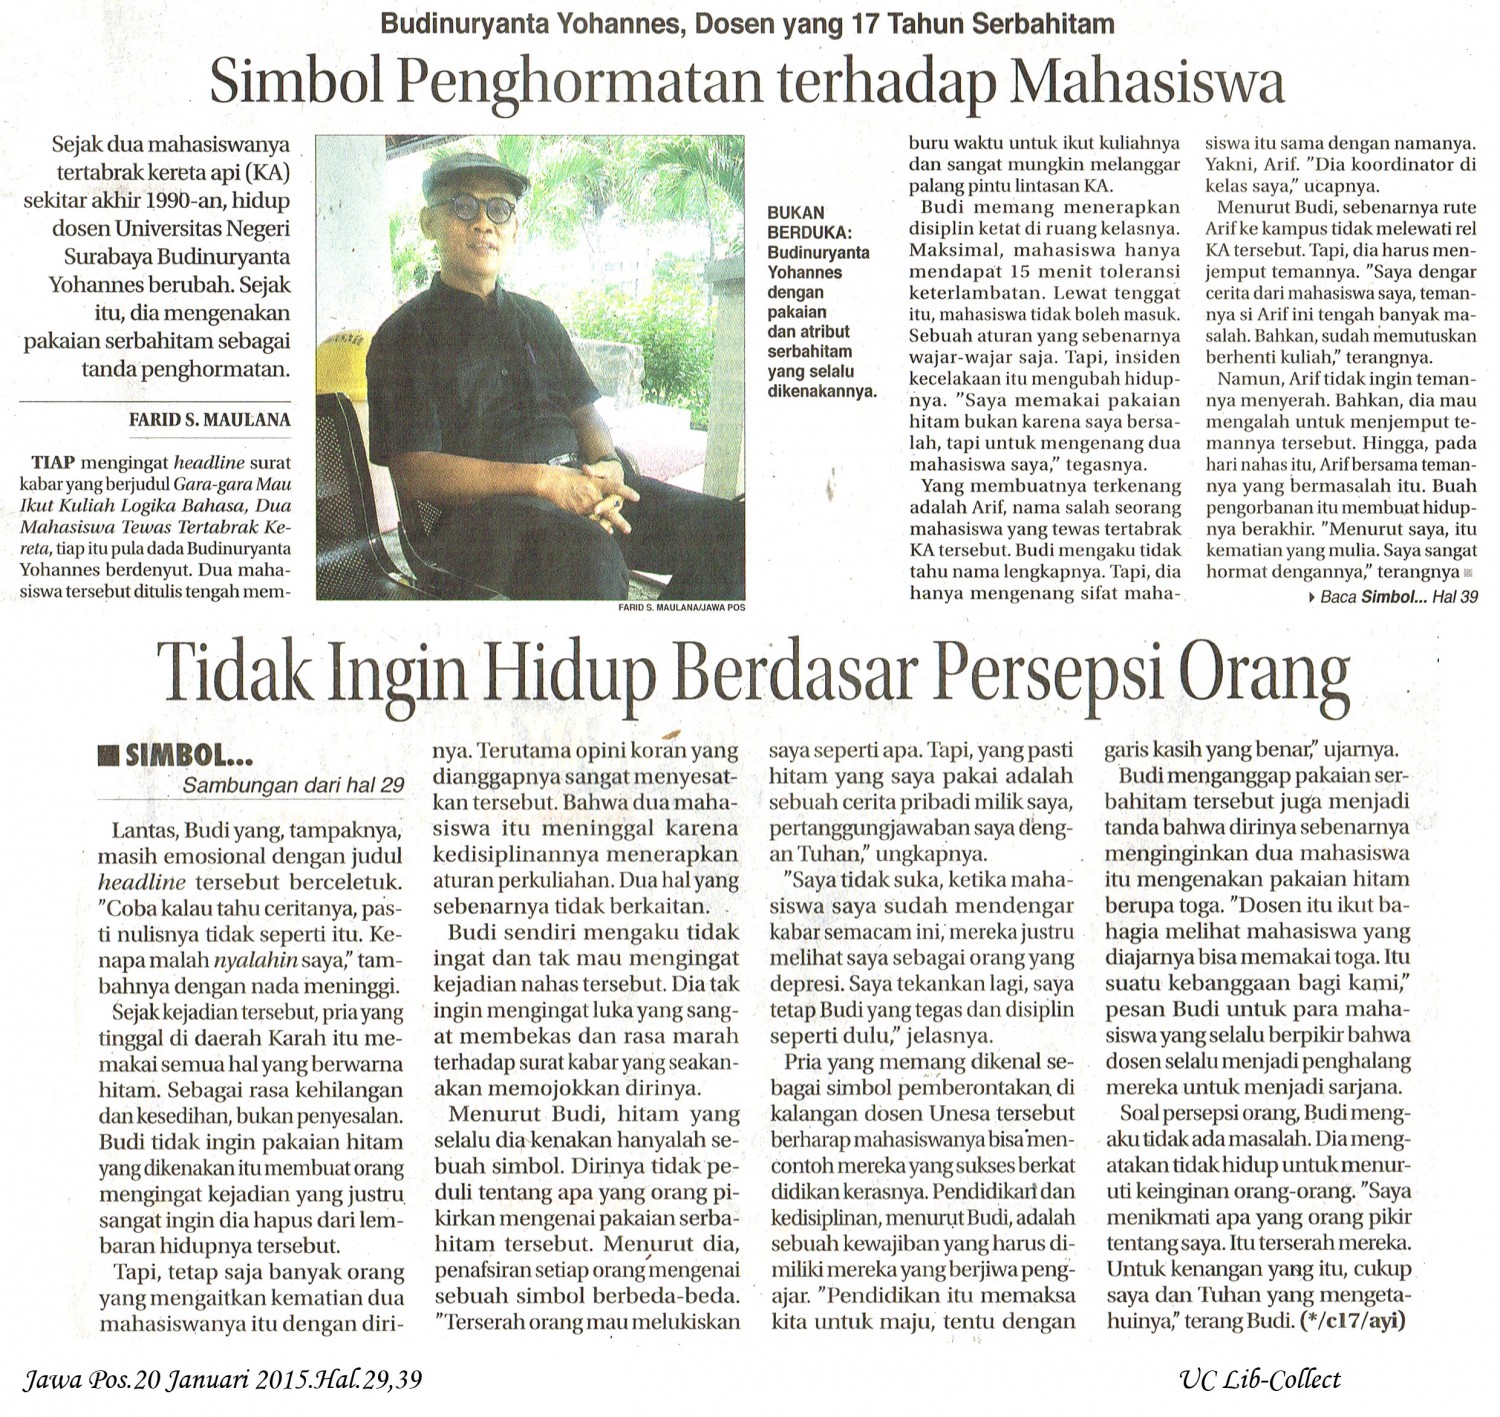 Simbol Penghormatan Terhadap Mahasiswa. Jawa Pos.20 Januari 2015.Hal.29,39